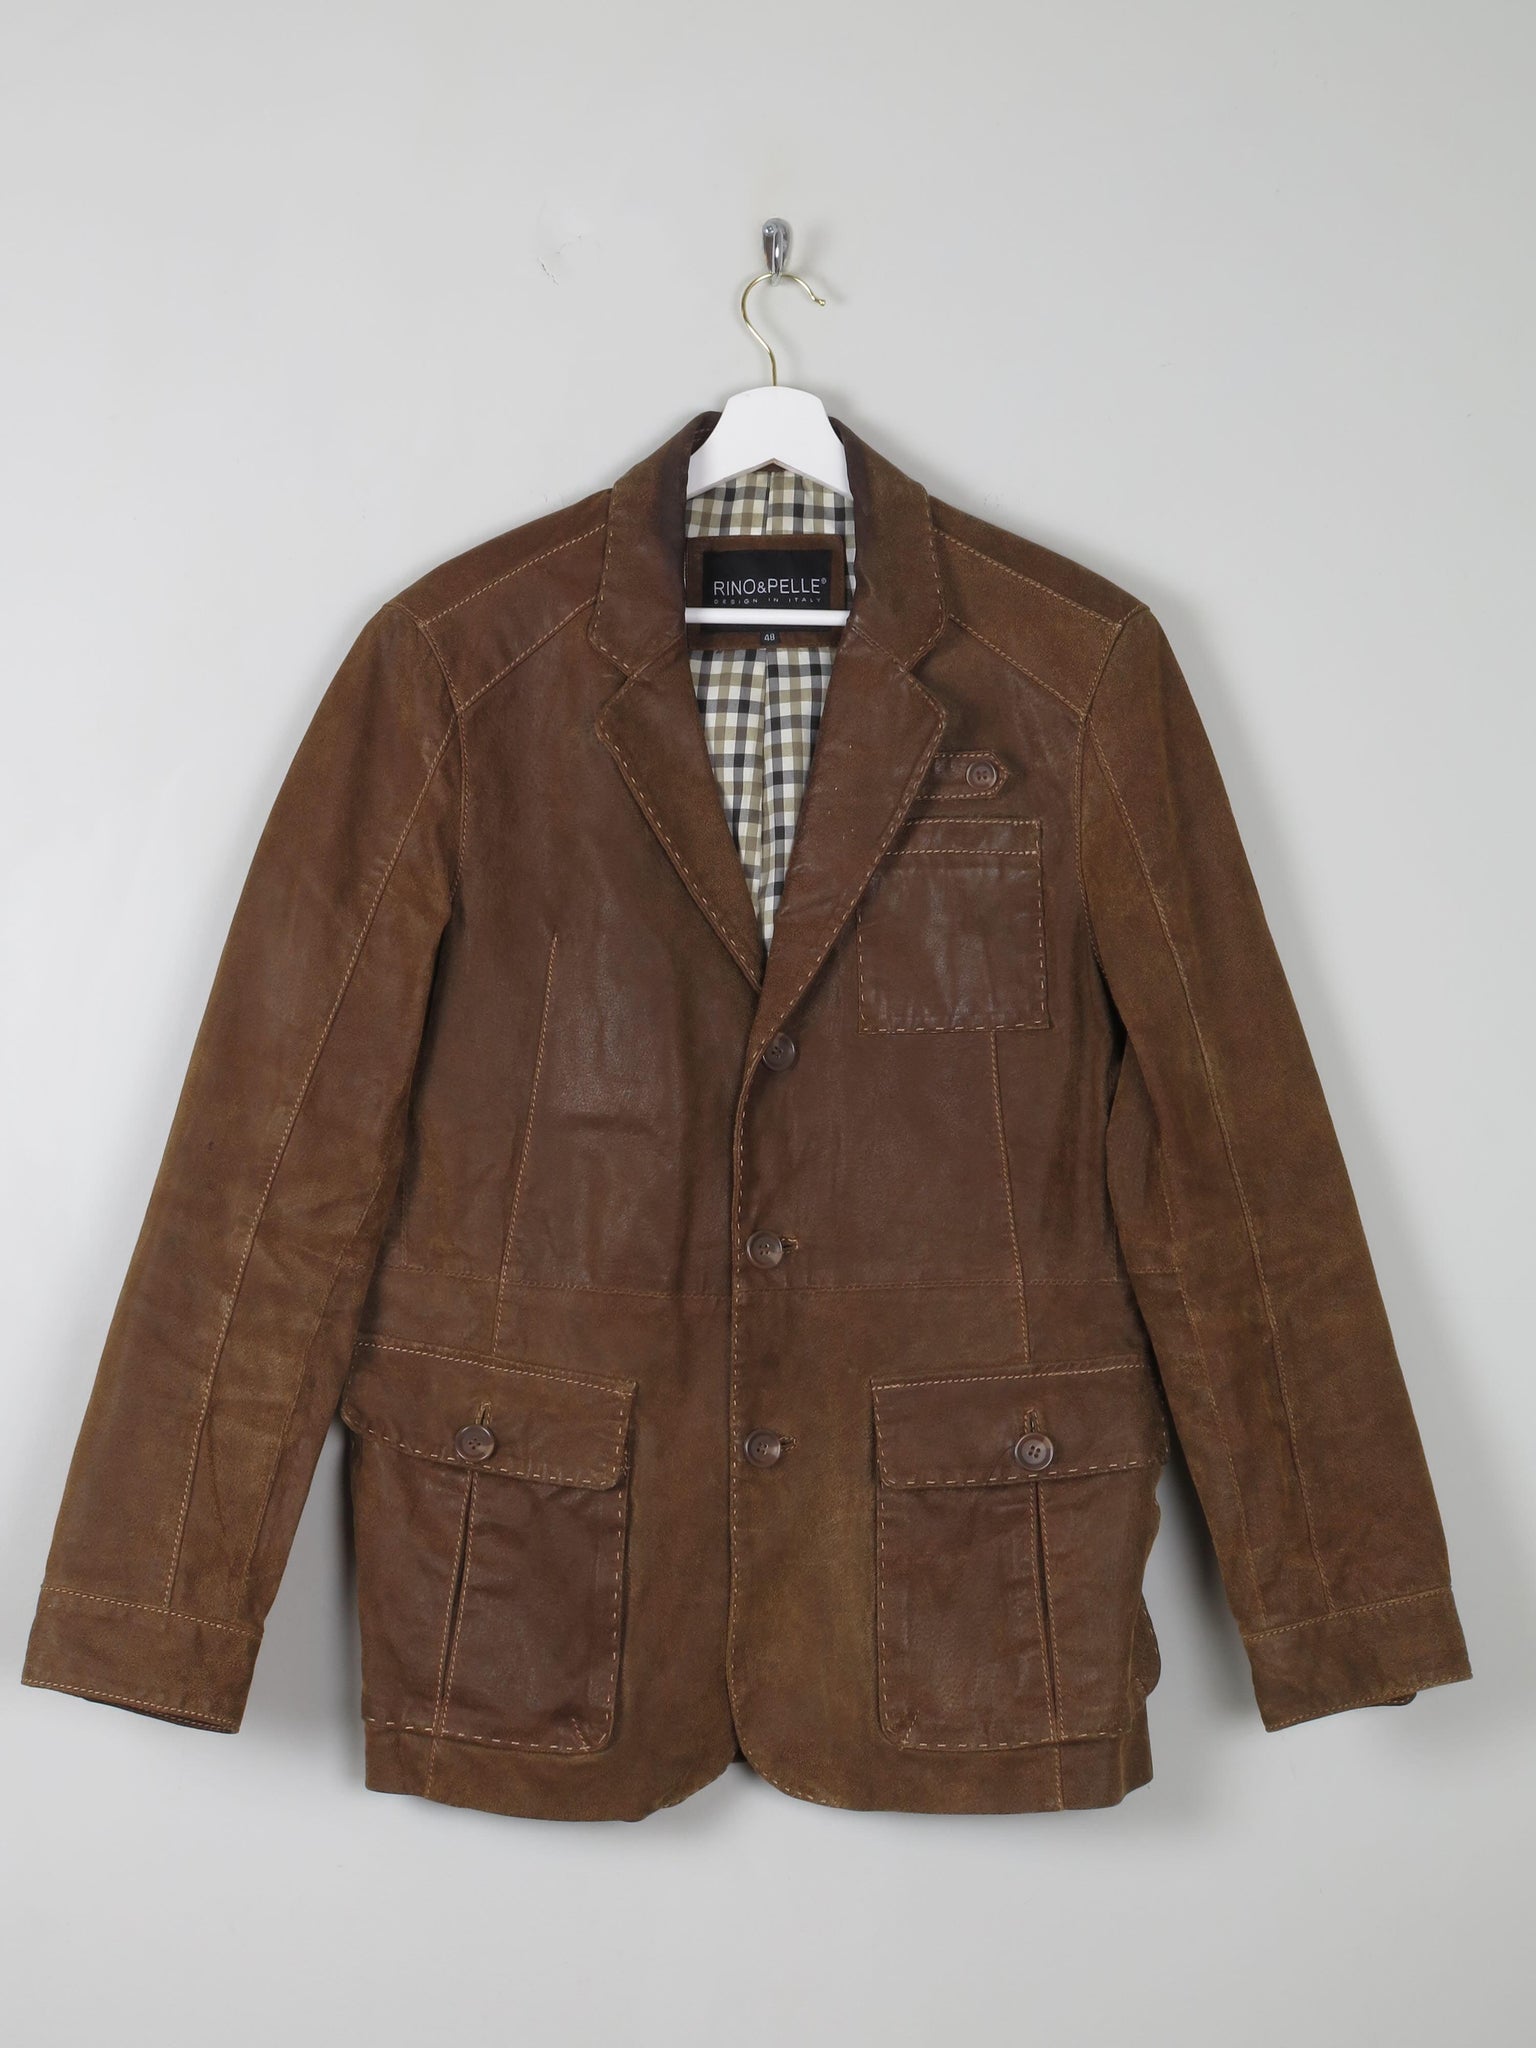 Men's Brown Vintage Suede Jacket 38/40 - The Harlequin